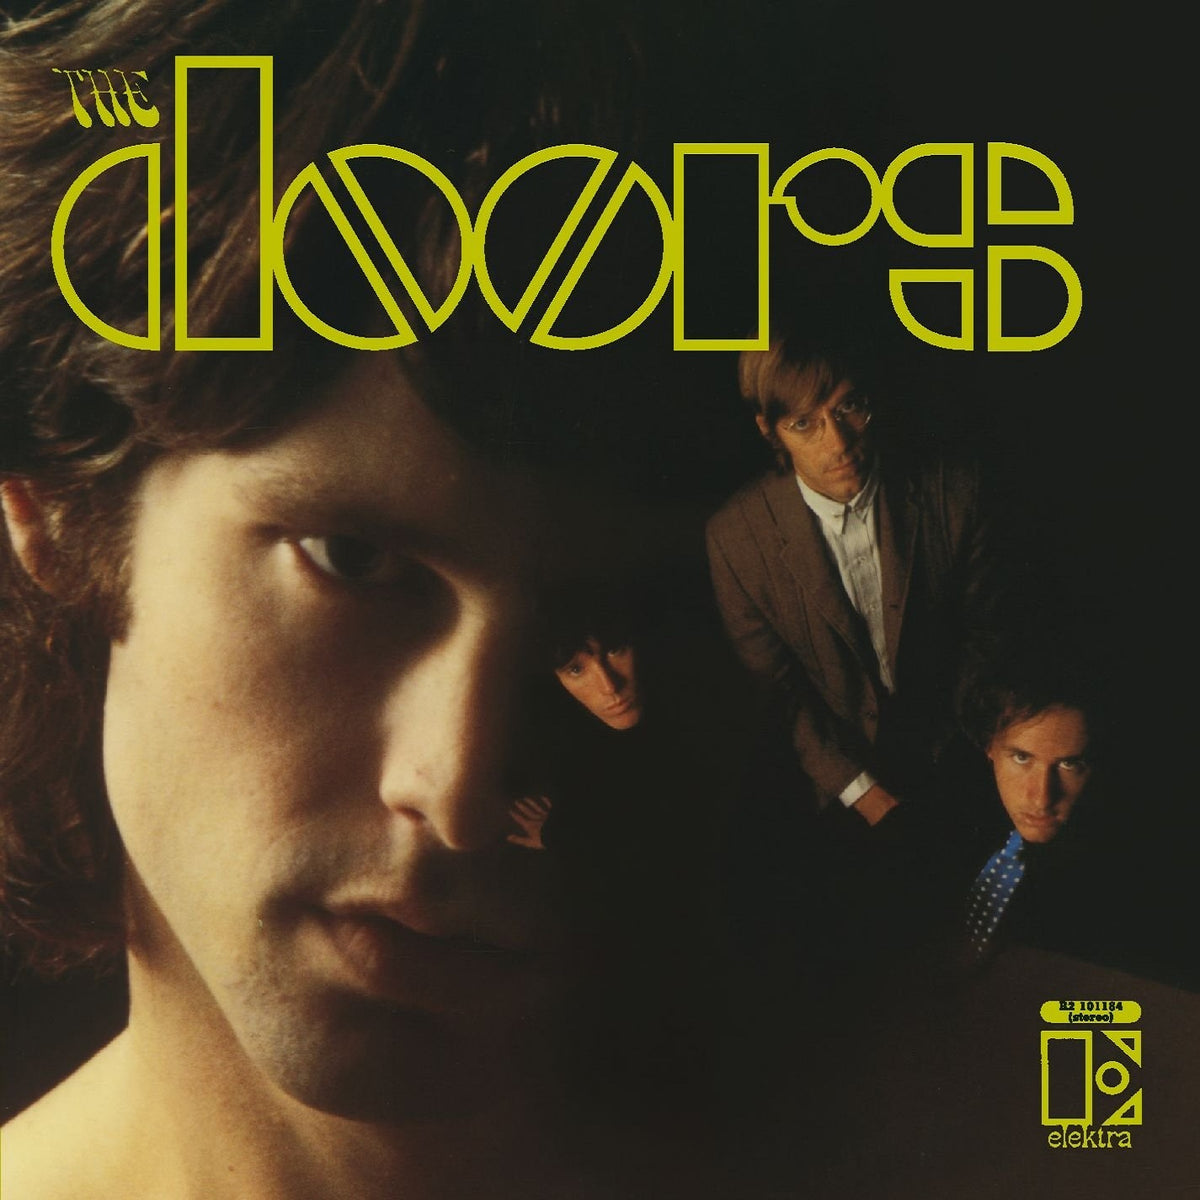 The Doors - The Doors - BROKEN 8 RECORDS